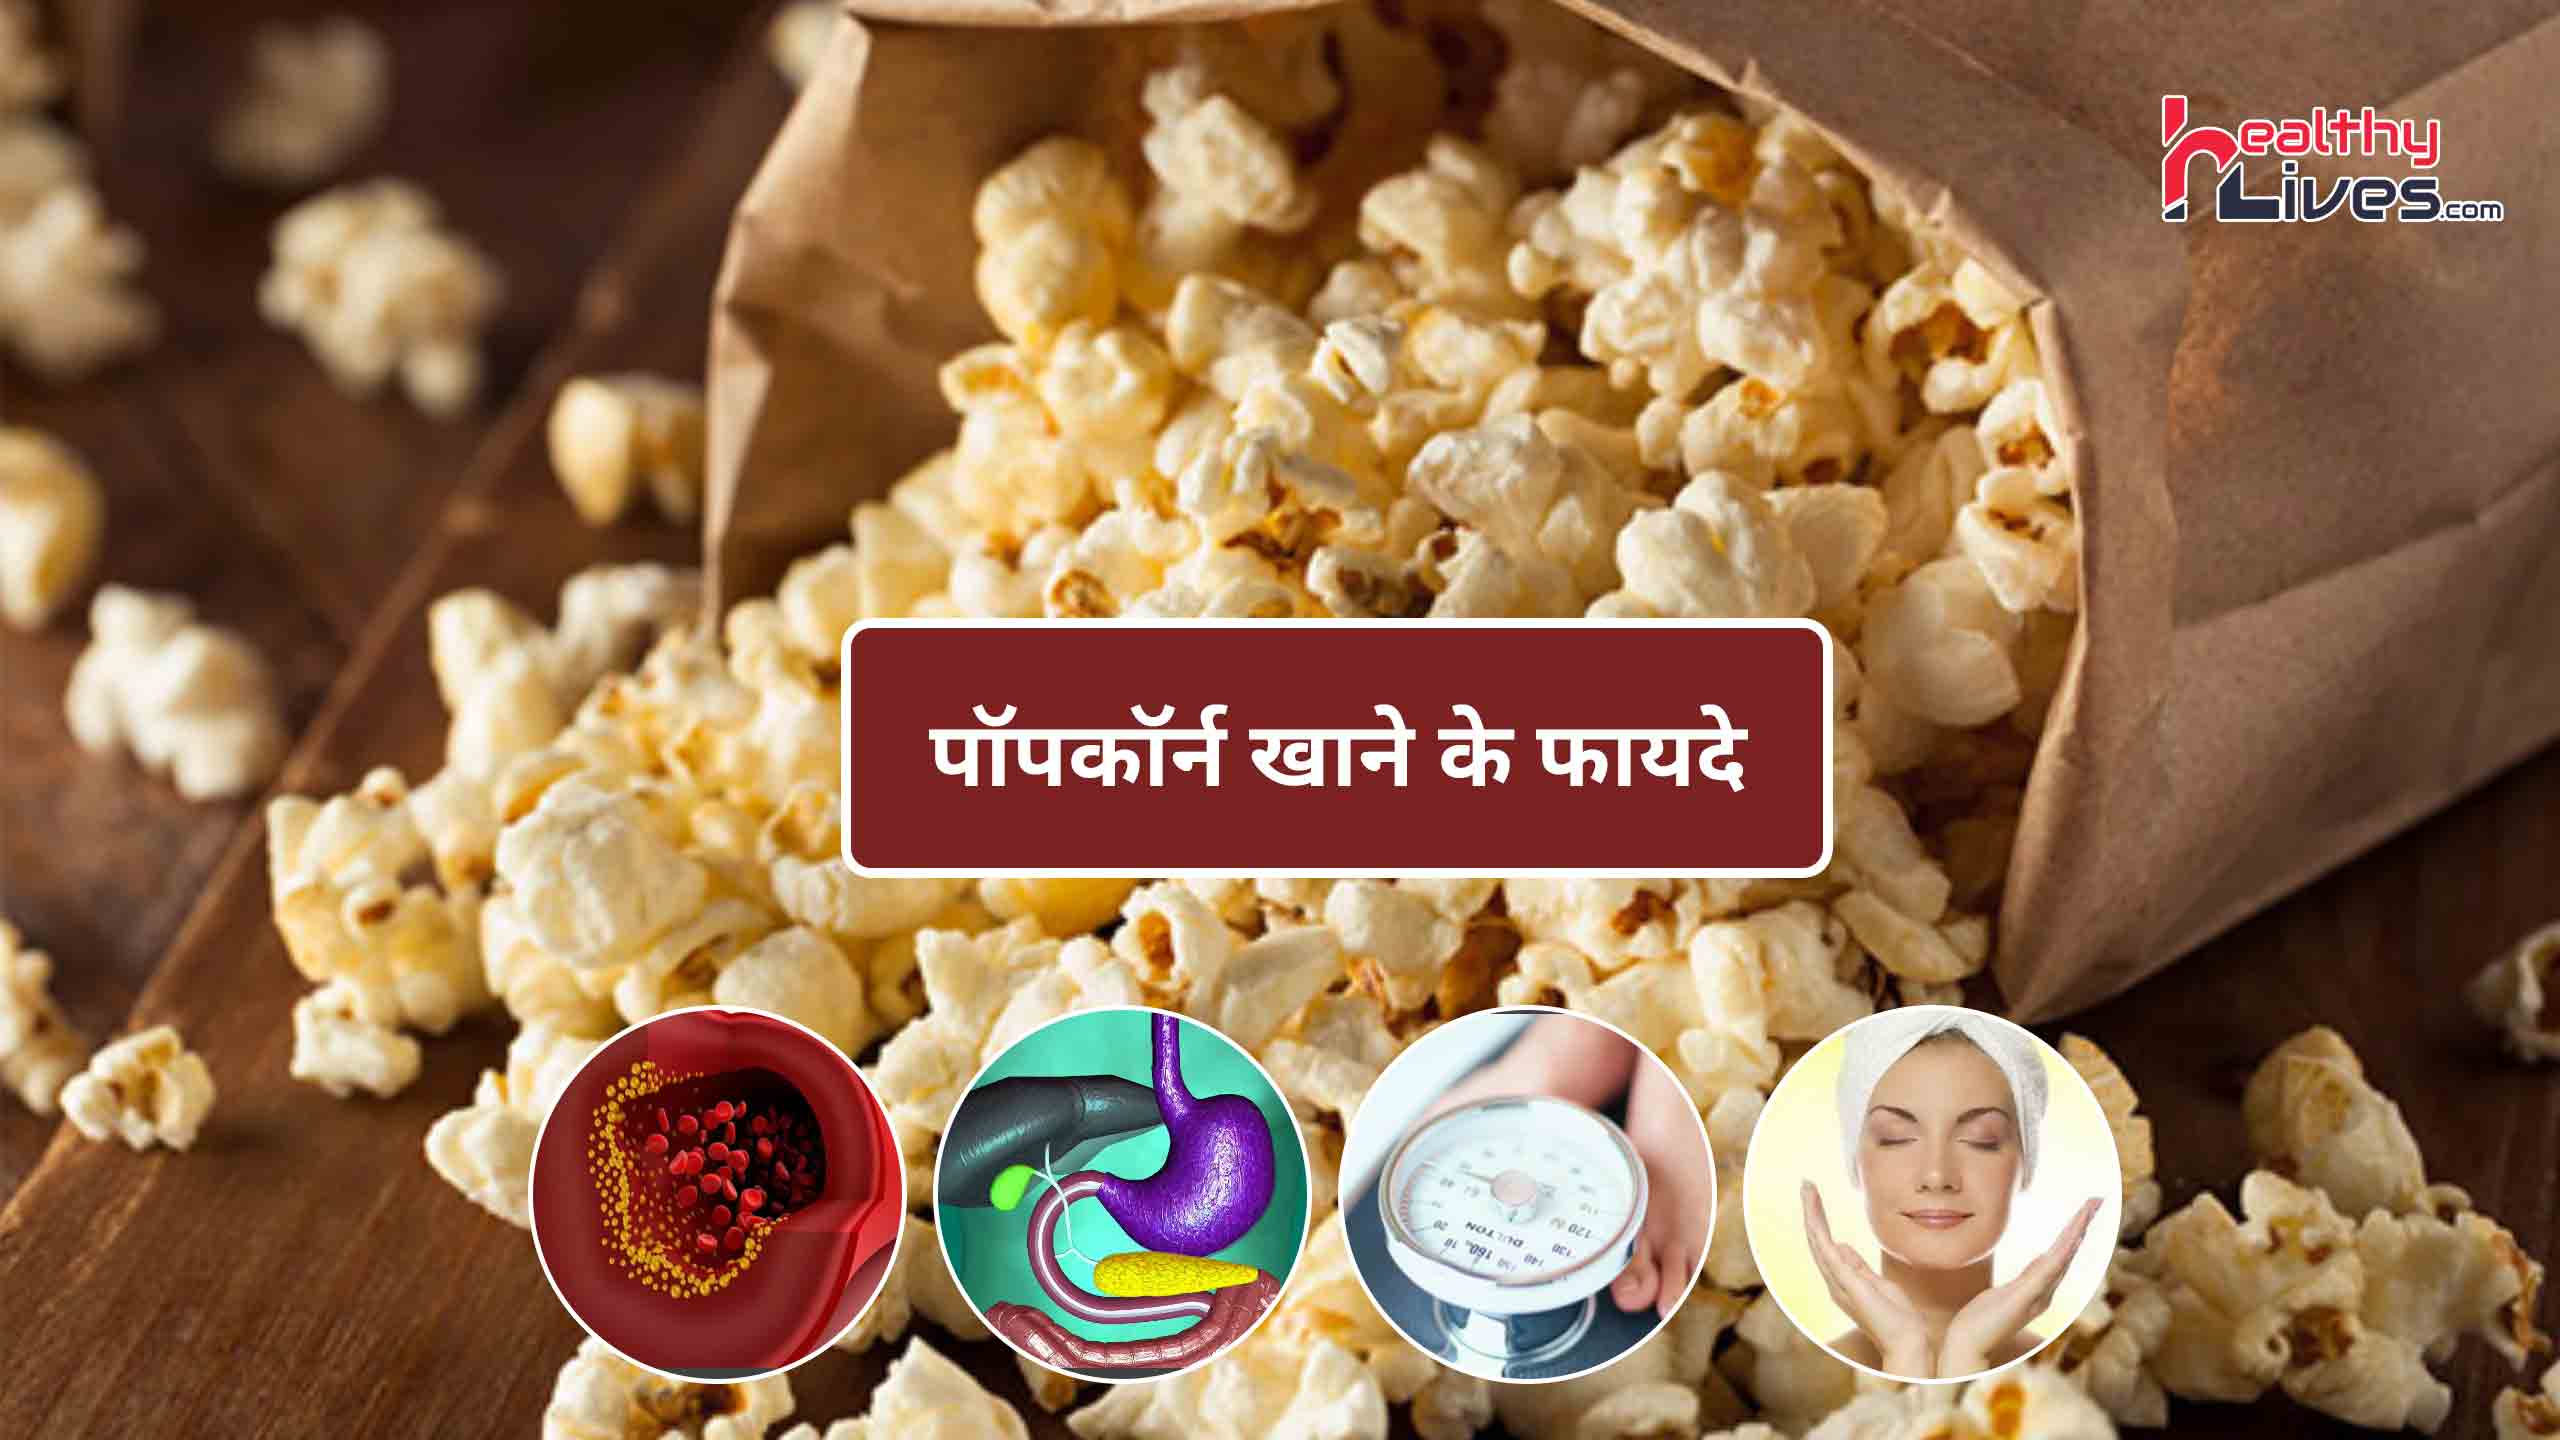 Popcorn Health Benefits: पॉपकॉर्न है सेहत के लिए लाभकारी, जाने इसके फायदे